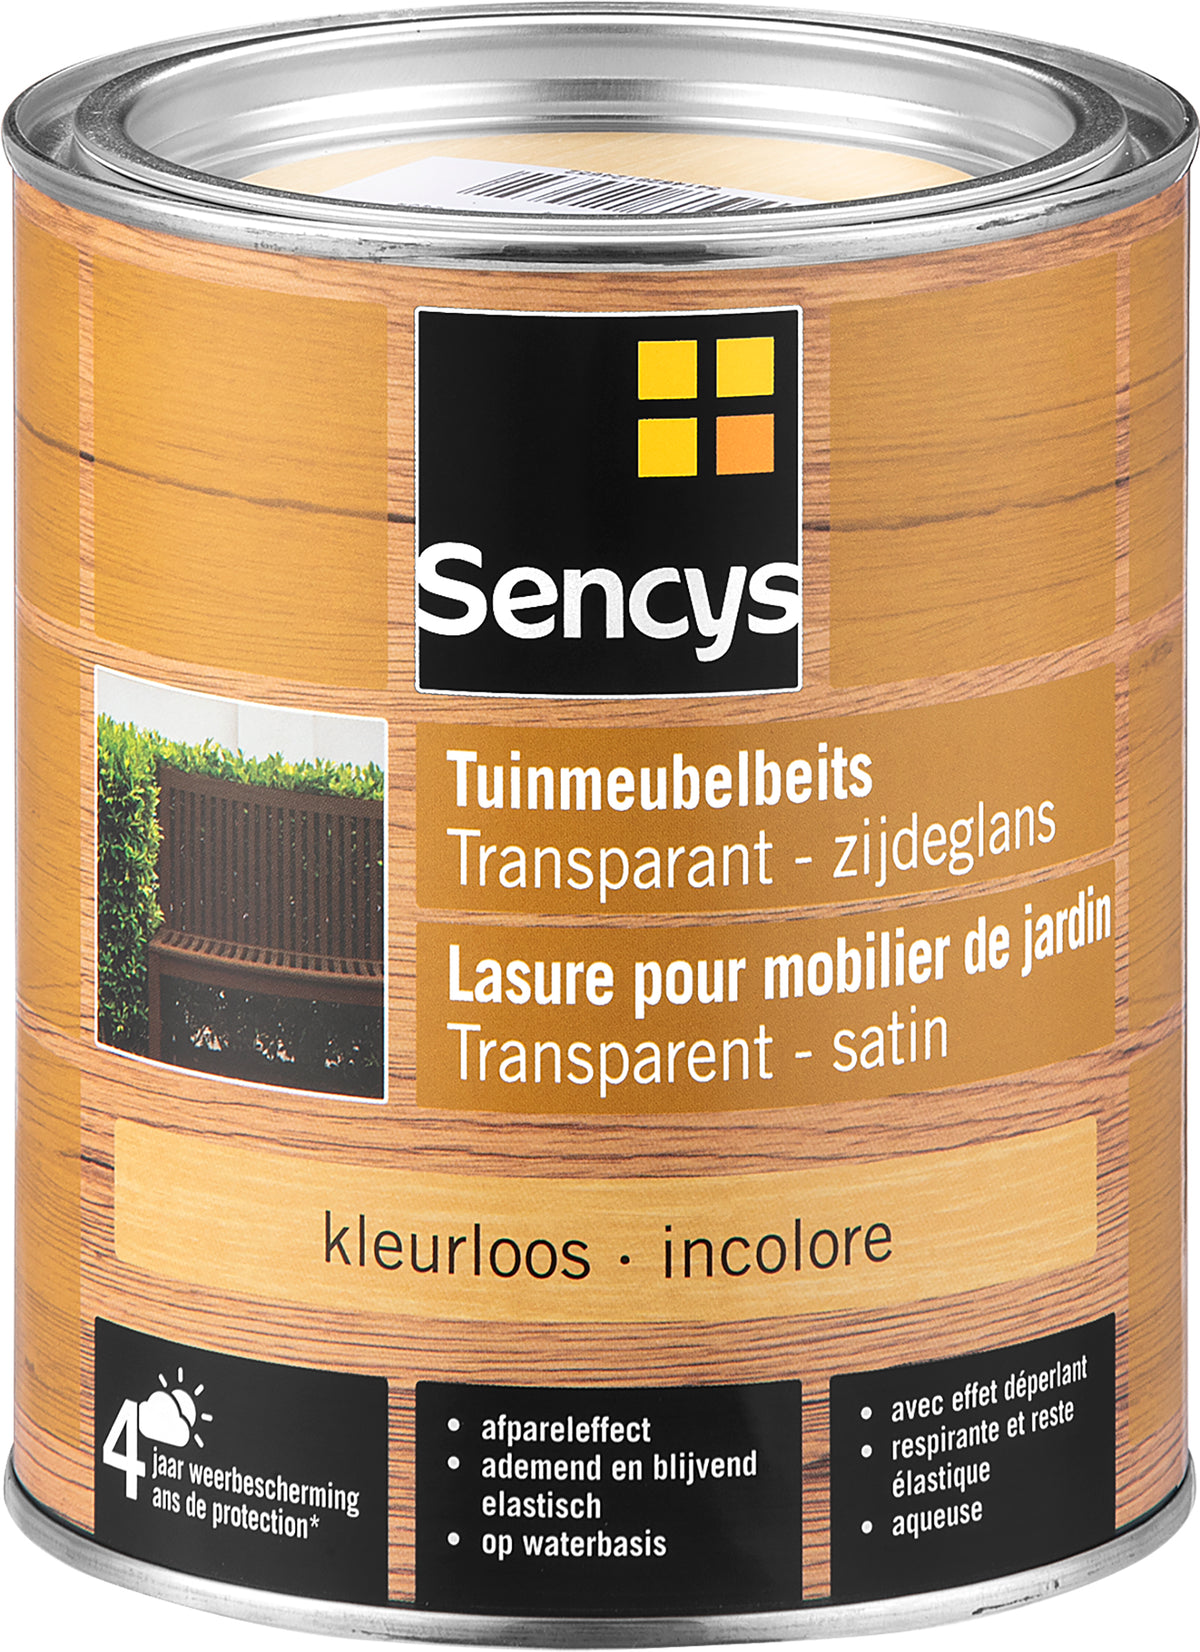 Sencys tuinmeubelbeits semi-tranparant kleurloos 750ml